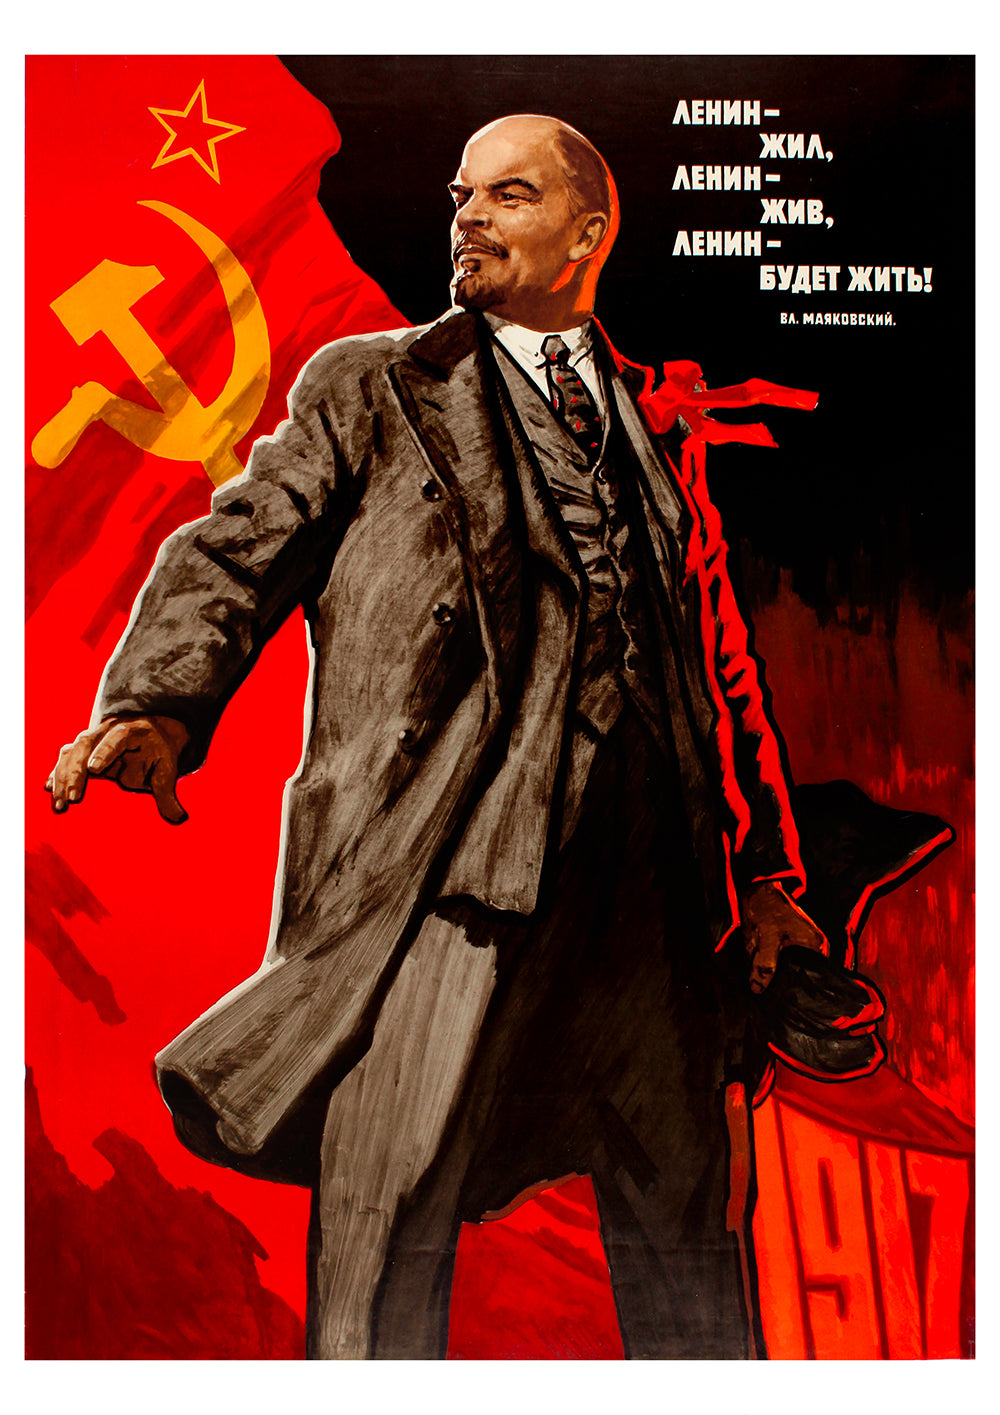 Lenin lived, Lenin lives, Lenin will live — Soviet poster